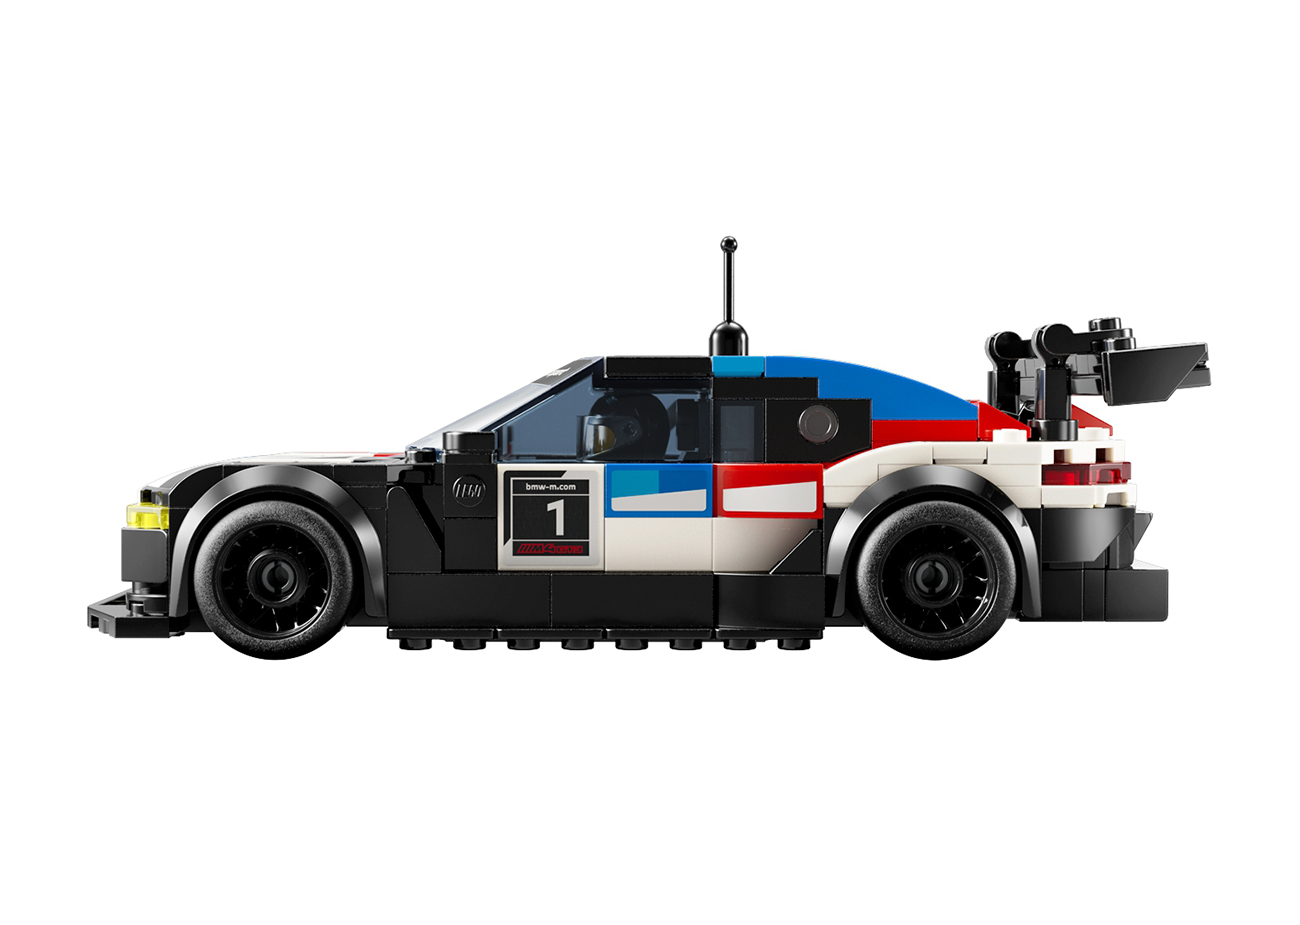 Η BMW M Motorsport και η LEGO γιορτάζουν το πάθος για τους αγώνες με δύο νέα σετ μοντέλων